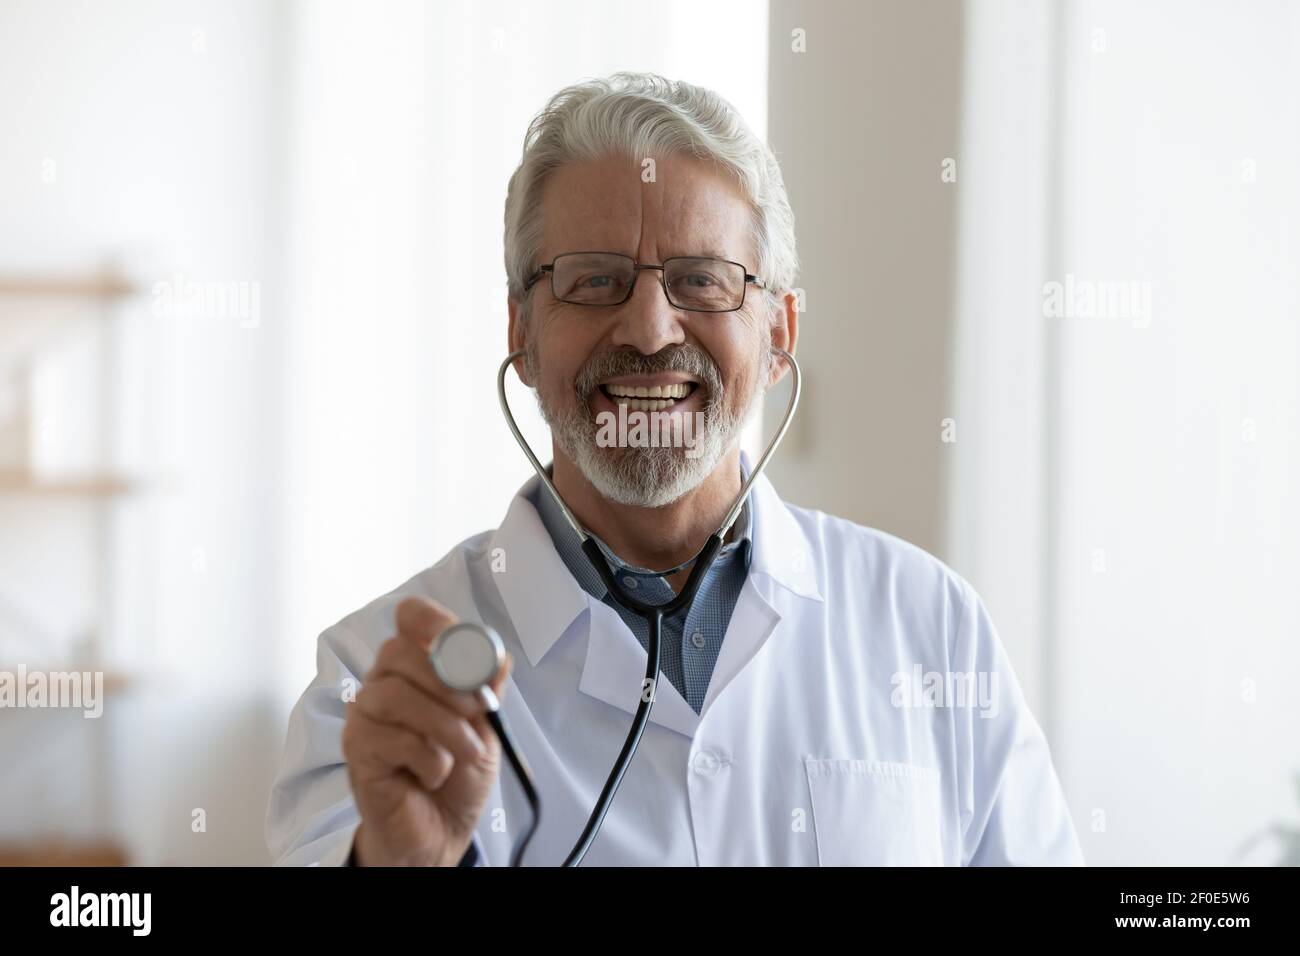 Kopfbild Porträt von lächelnd reifen männlichen Arzt mit Stethoskop Stockfoto